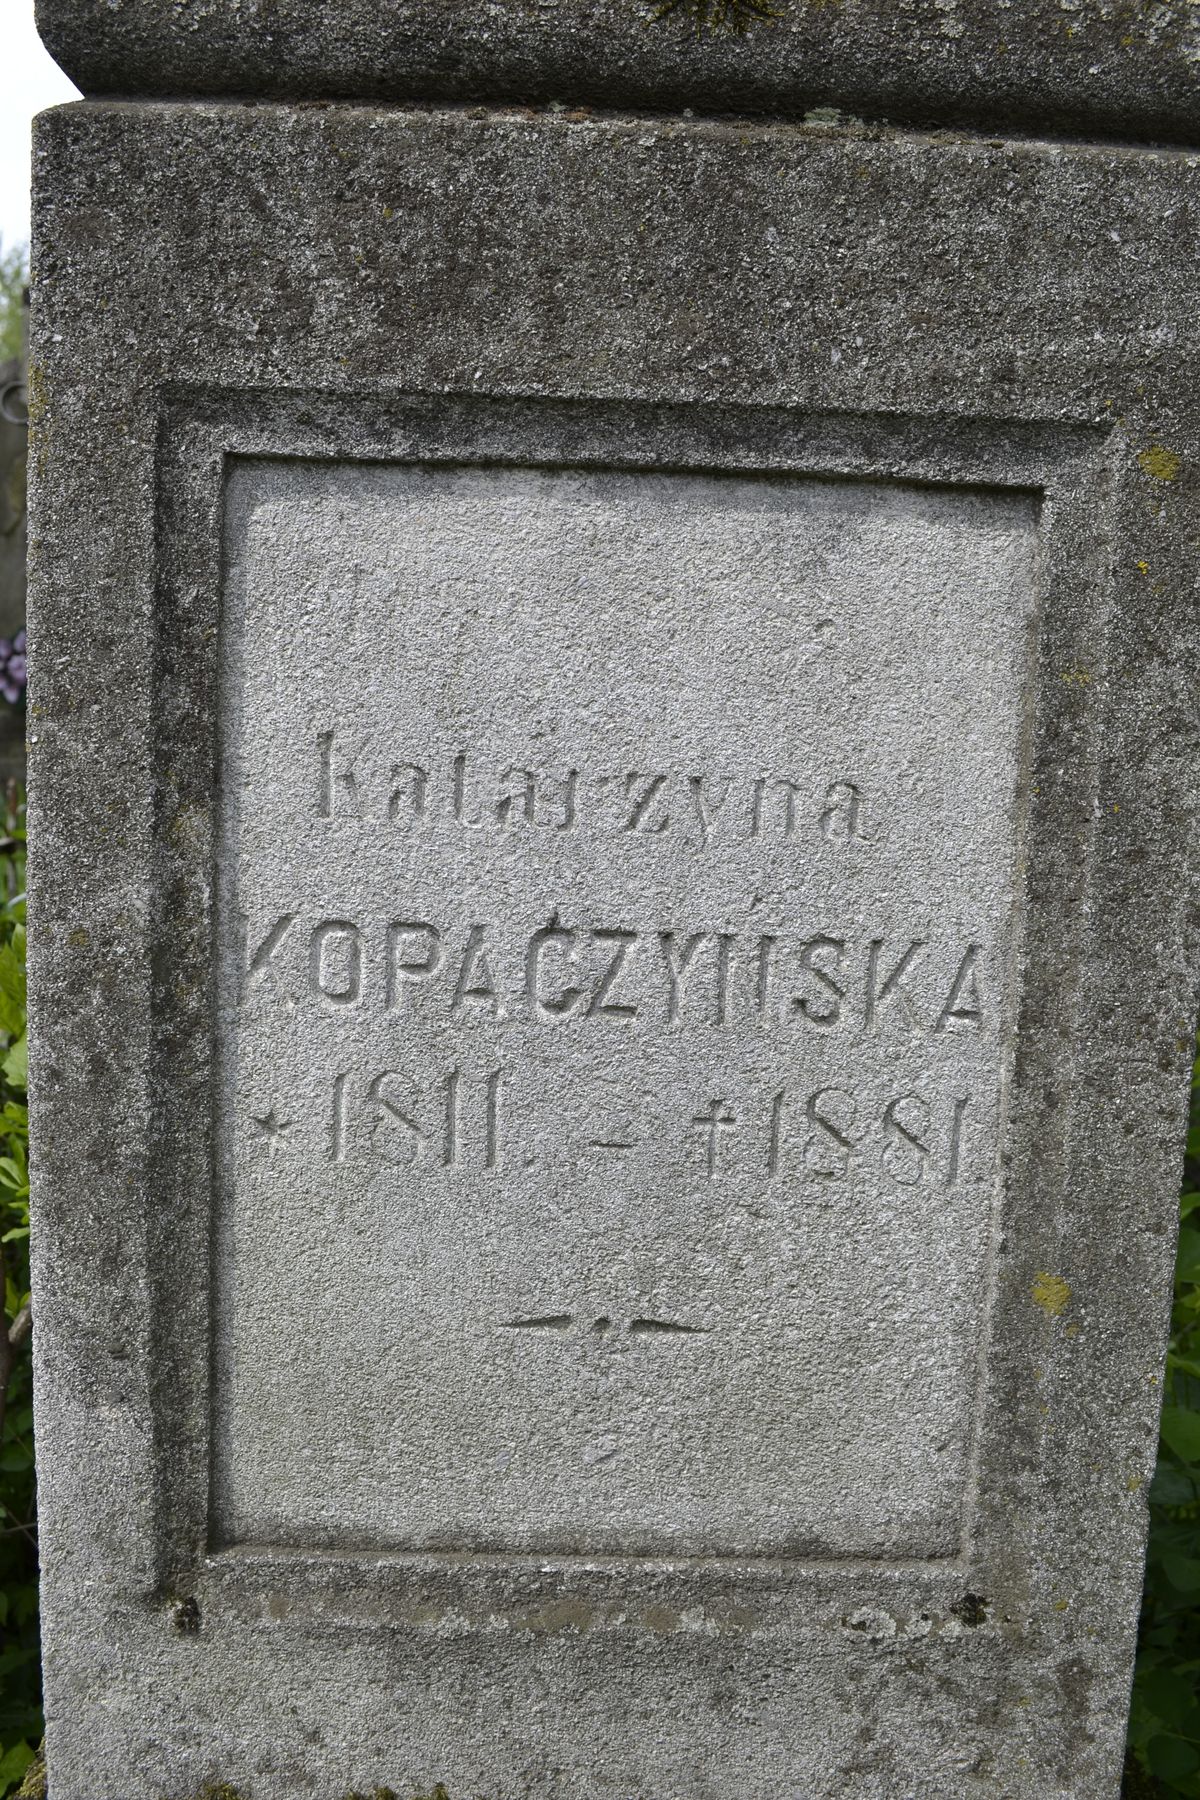 Inskrypcja na nagrobku Katarzyny Kopaczyńskiej, cmentarz w Tarnopolu, stan z 2016